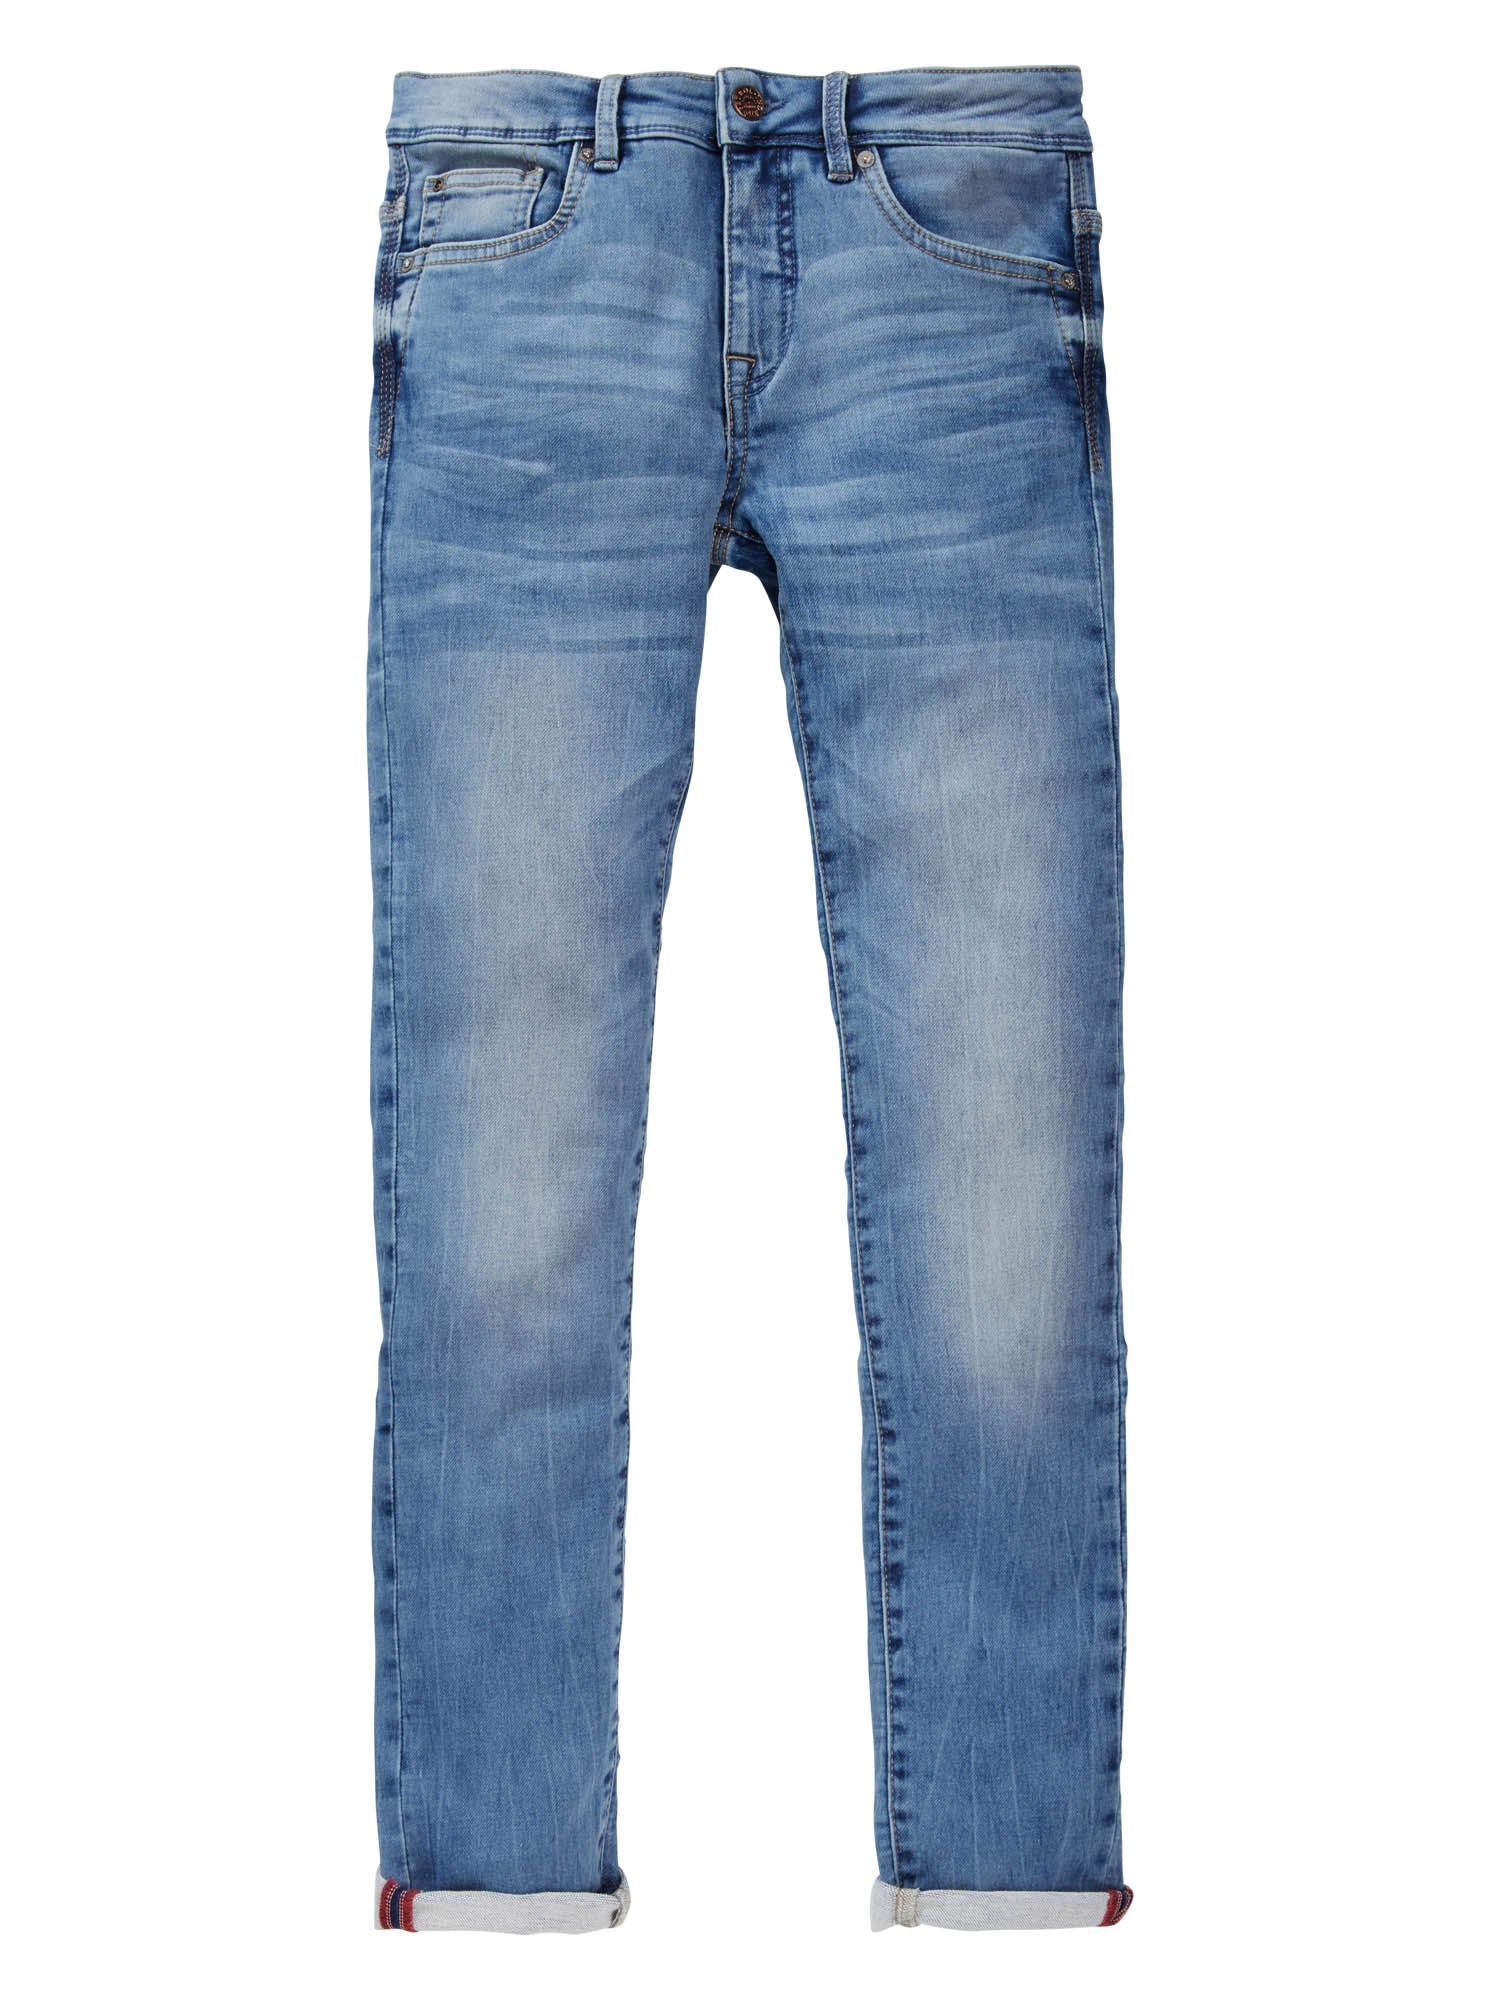 Jongens Five-pocket jeans van Petrol in de kleur Light Stone in maat 176.